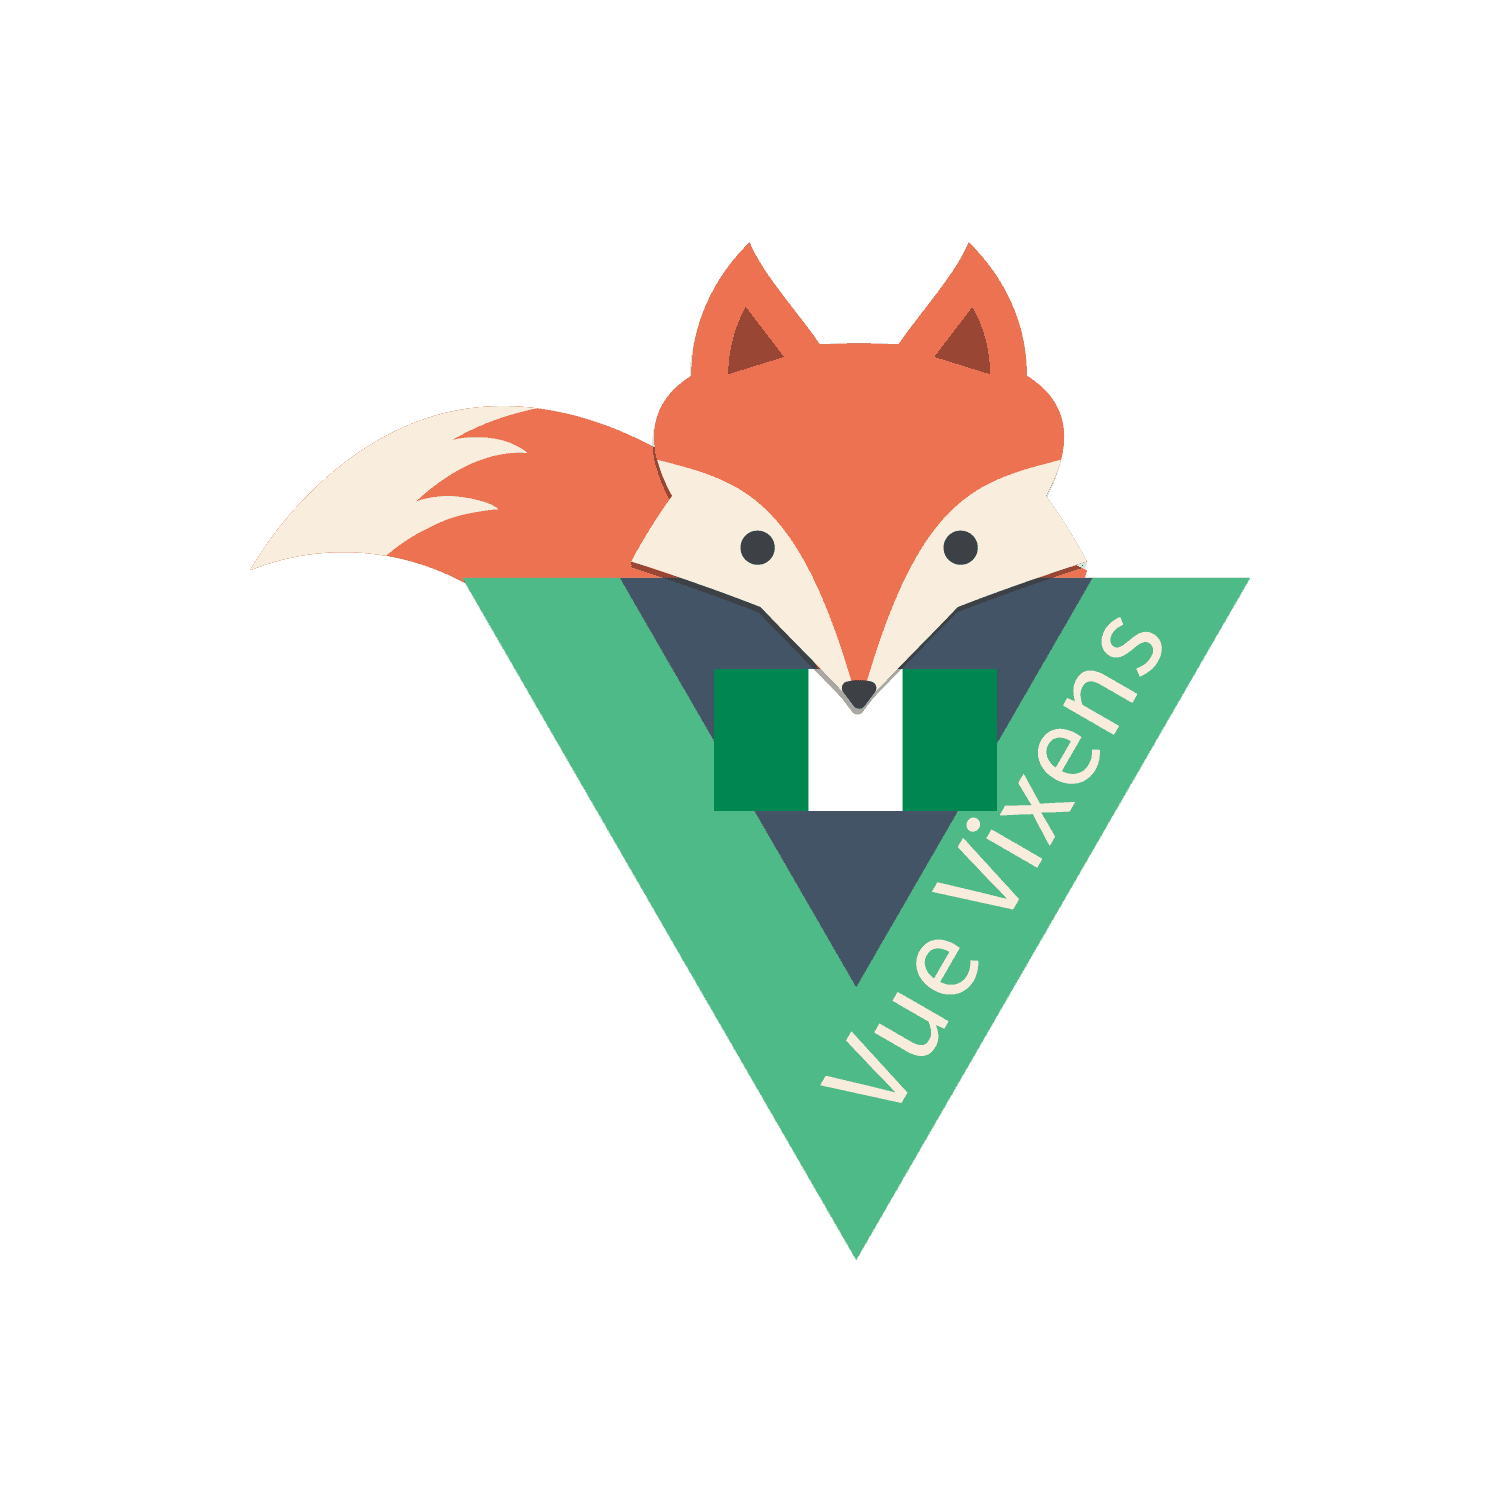 Vue Vixens NG logo